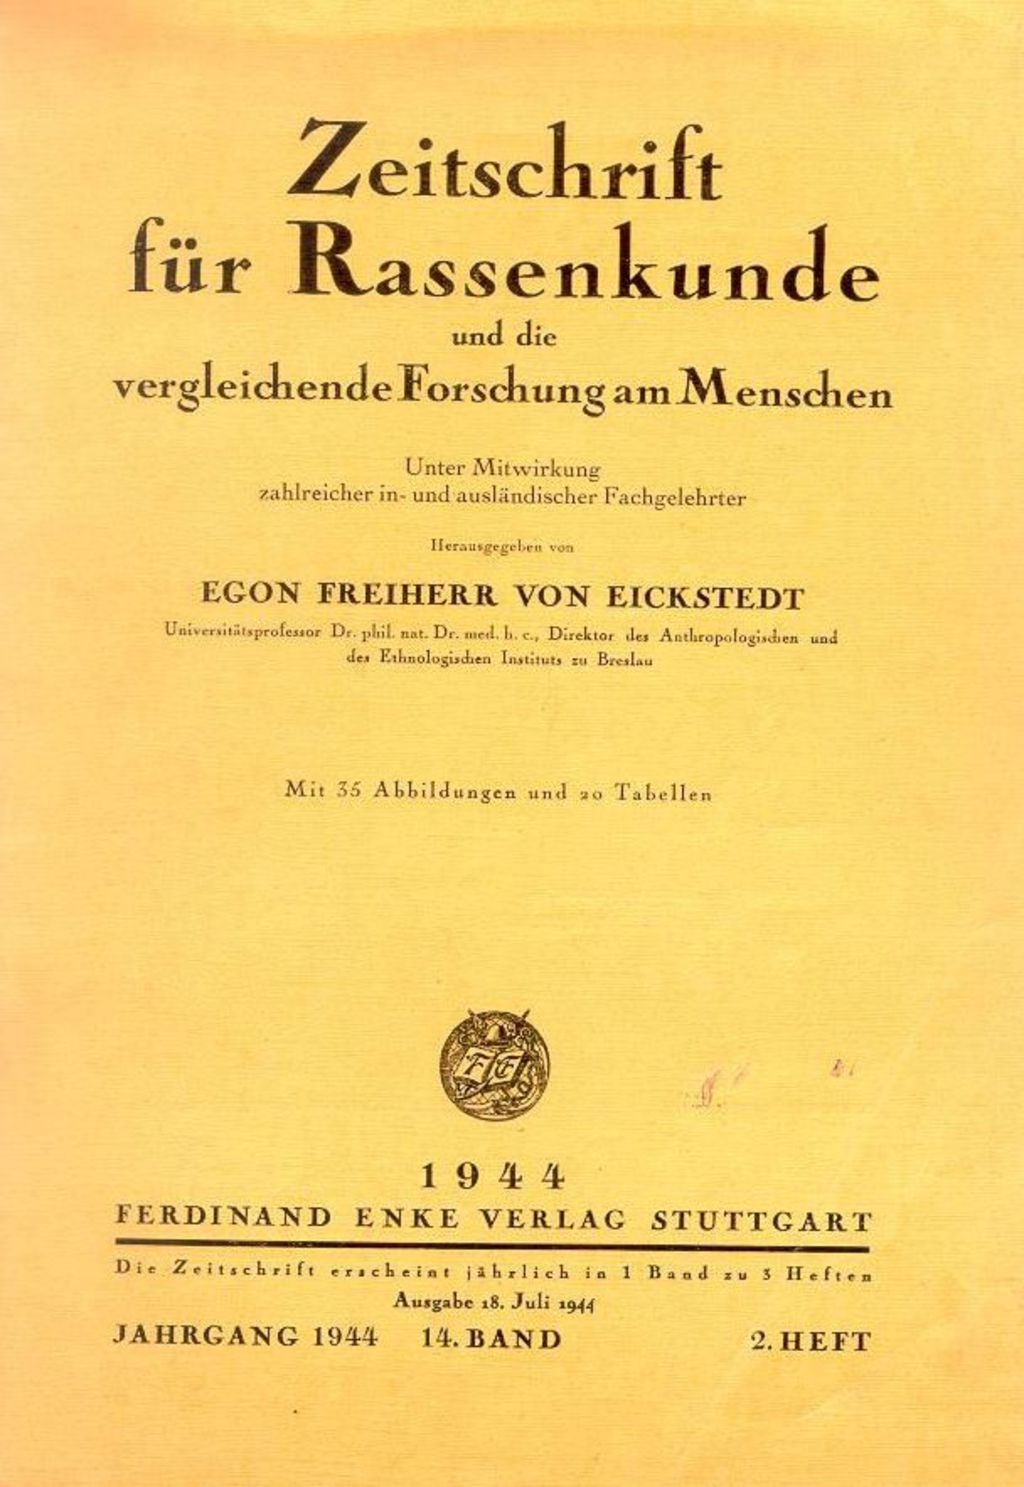 Exponat: Zeitschrift: Fachorgan "Zeitschrift für Rassenkunde", 1944